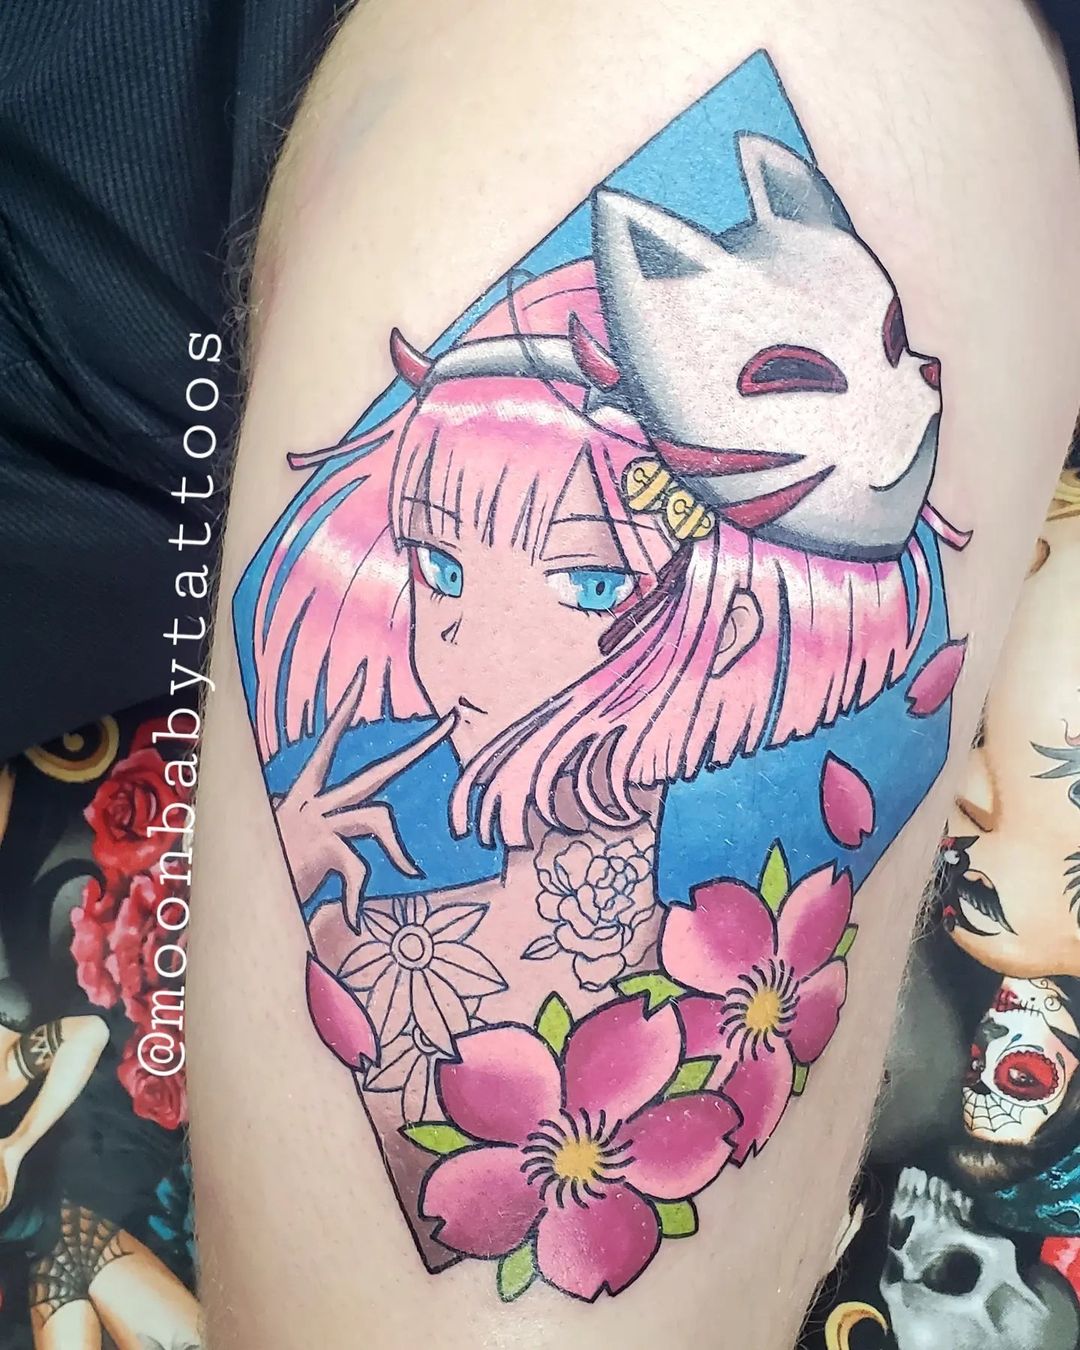 Tatuaje Kitsune Inspirado en Anime de Color Rosa Intenso